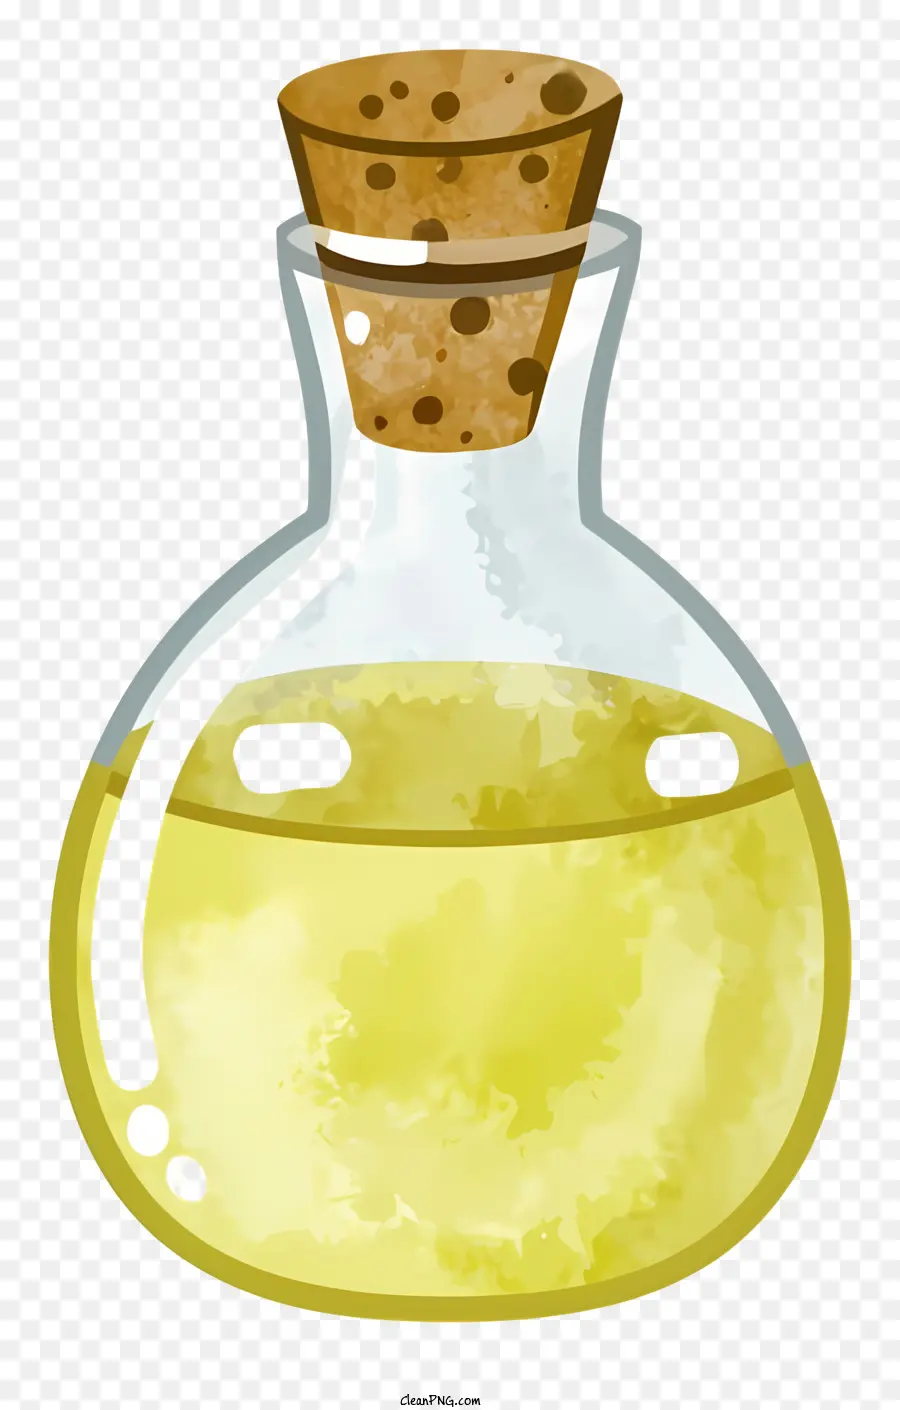 Cartoonglas Flasche dunkle flüssige Korkbraune Farbe - Zusammenfassung: Bild einer kleinen Glasflasche mit dunkler Flüssigkeit und Kork